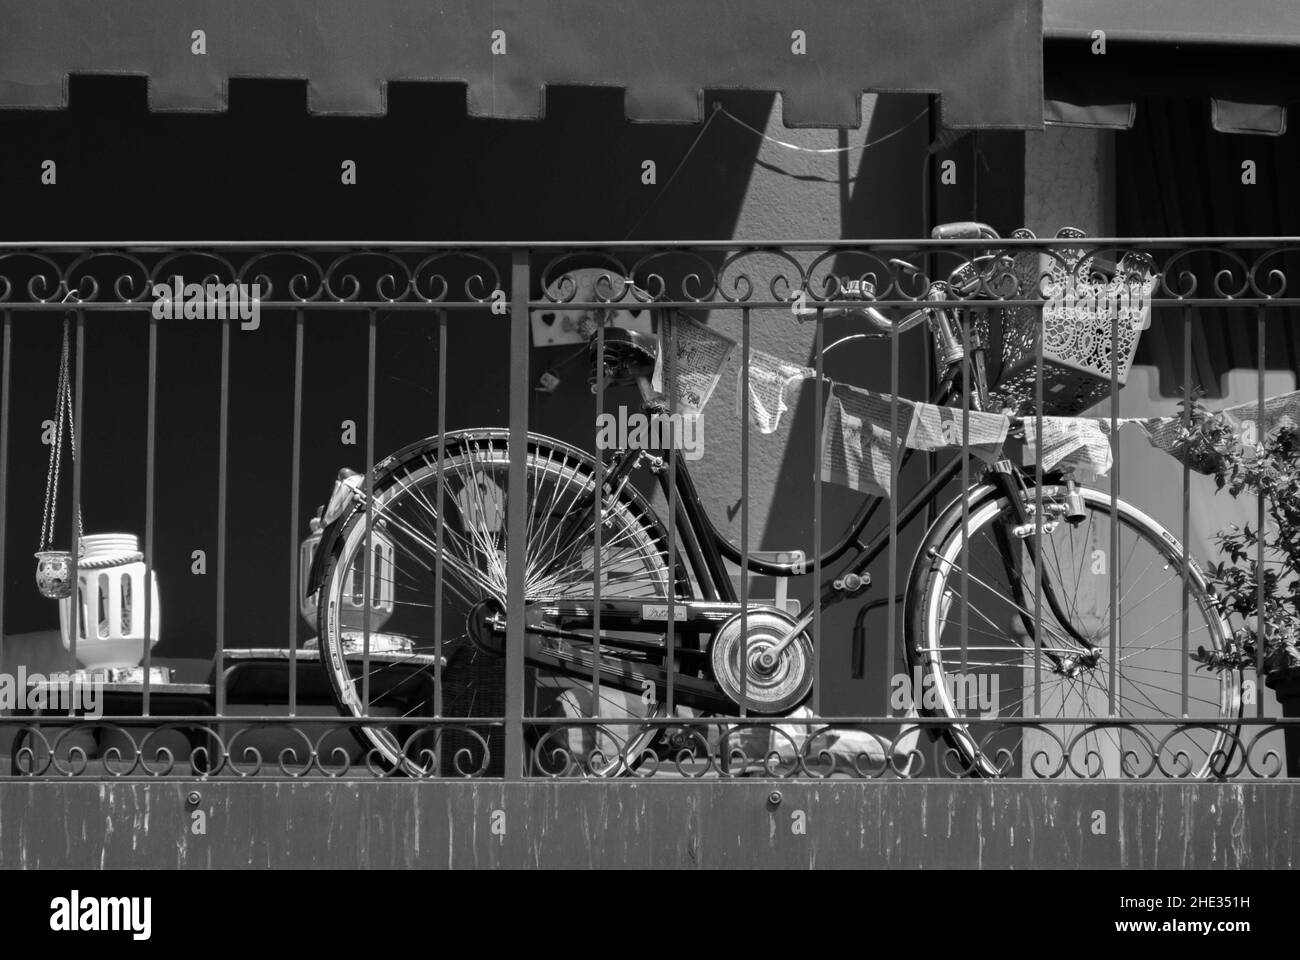 Fahrrad sicher auf dem Balkon am Gardasee in Italien abgestellt Stock Photo